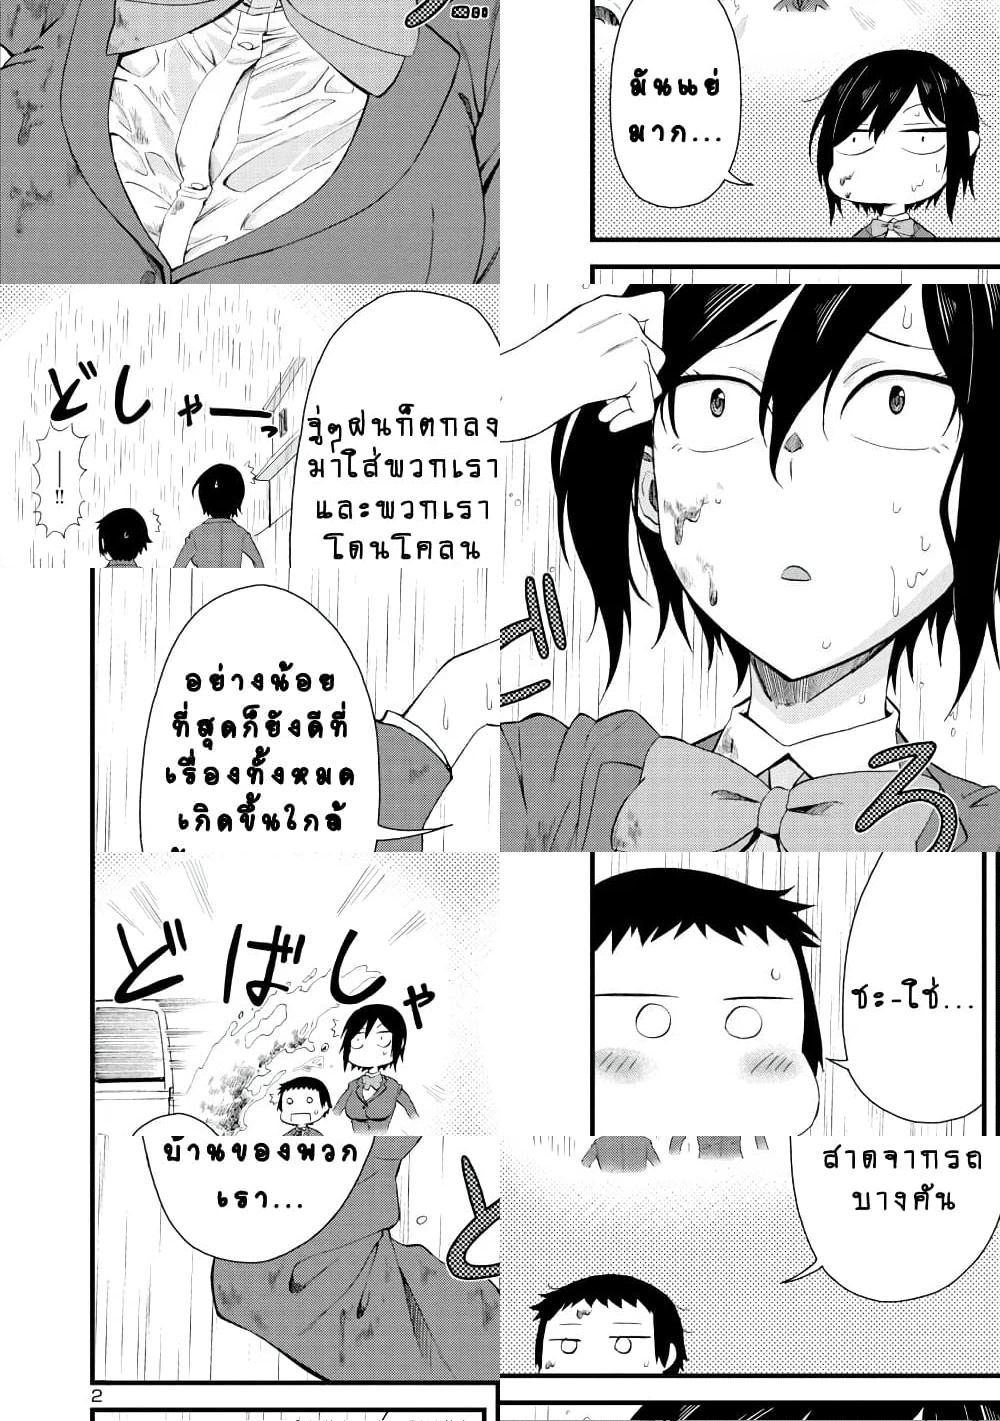 Hitomi-chan Is Shy With Strangers วันๆของน้องฮิโตมิก็เป็นแบบนี้แหล่ะ - 11 - 2